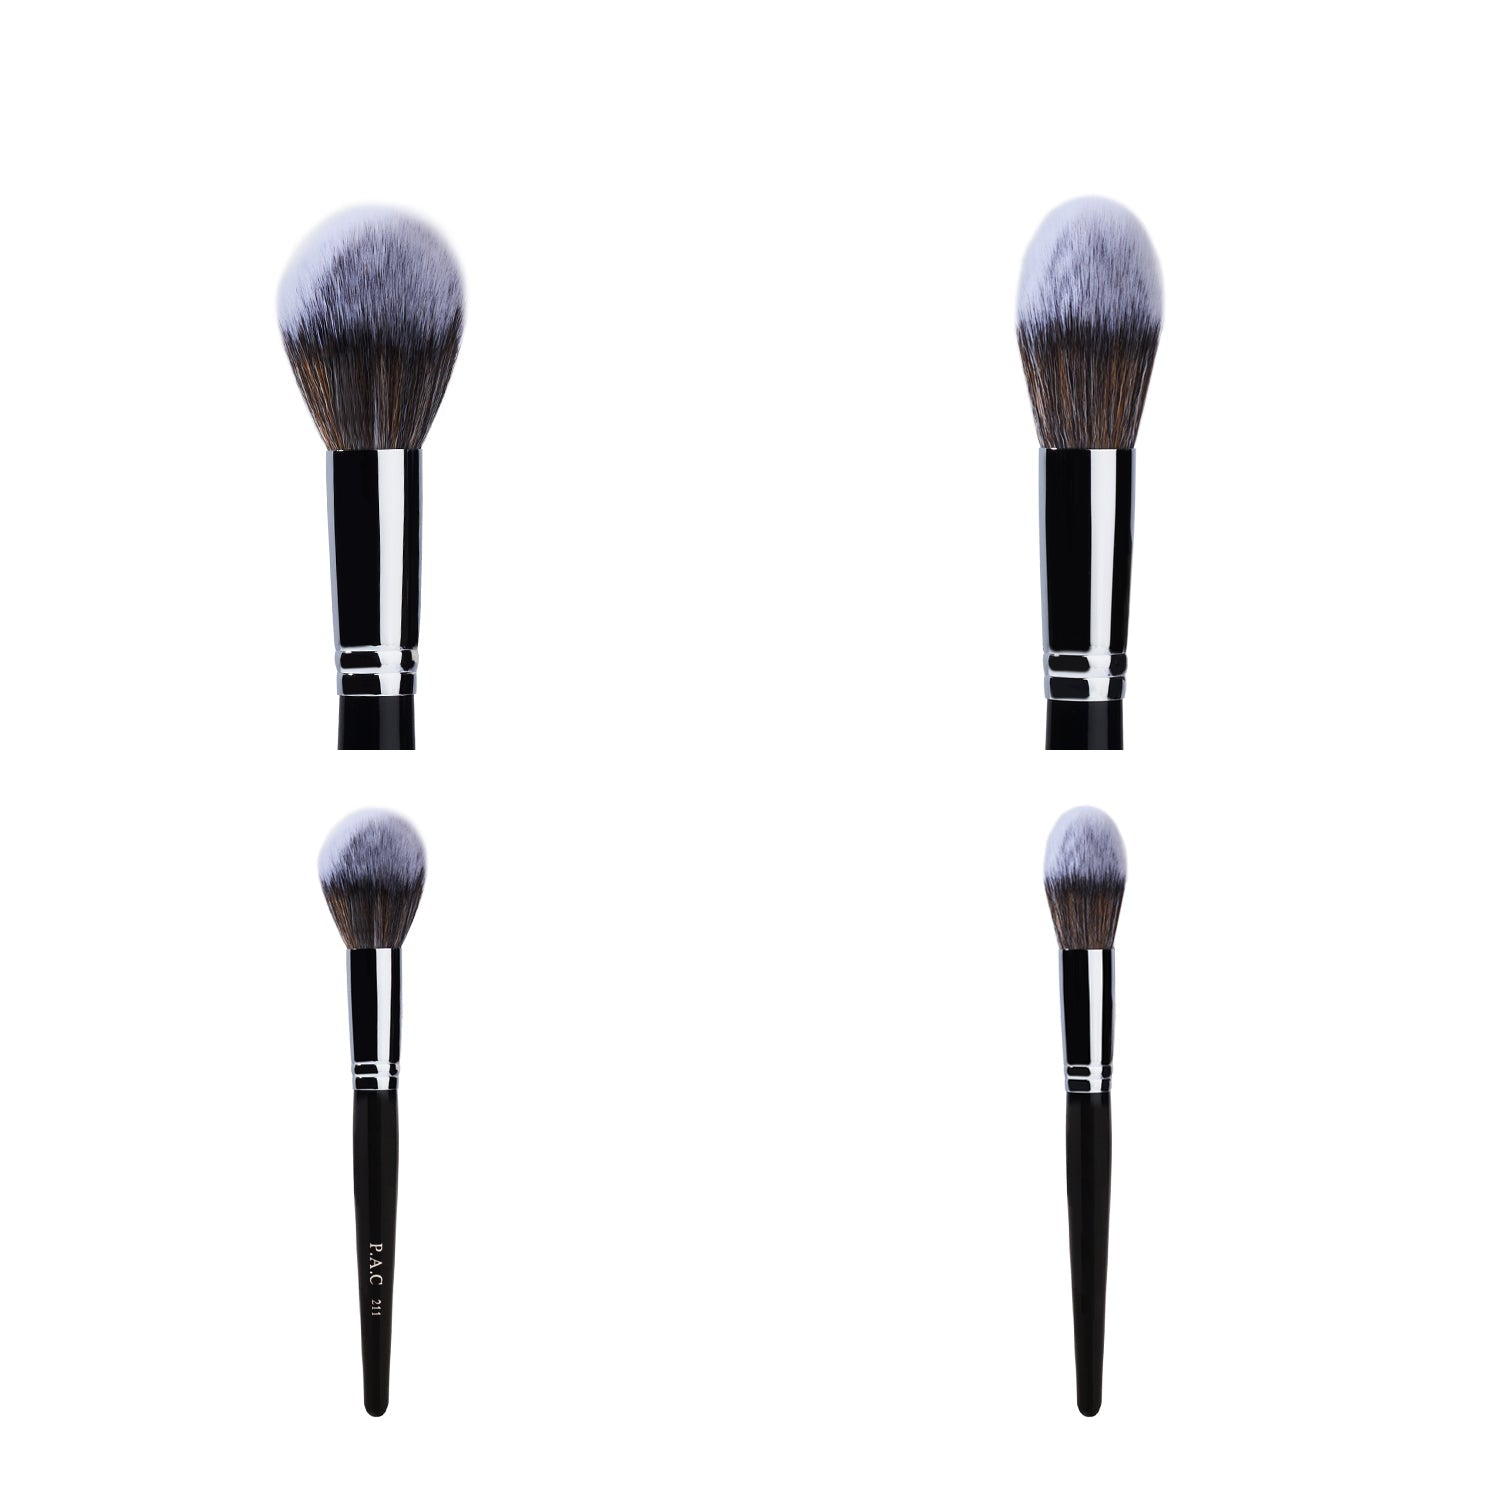 PAC Cosmetics Powder Brush 211